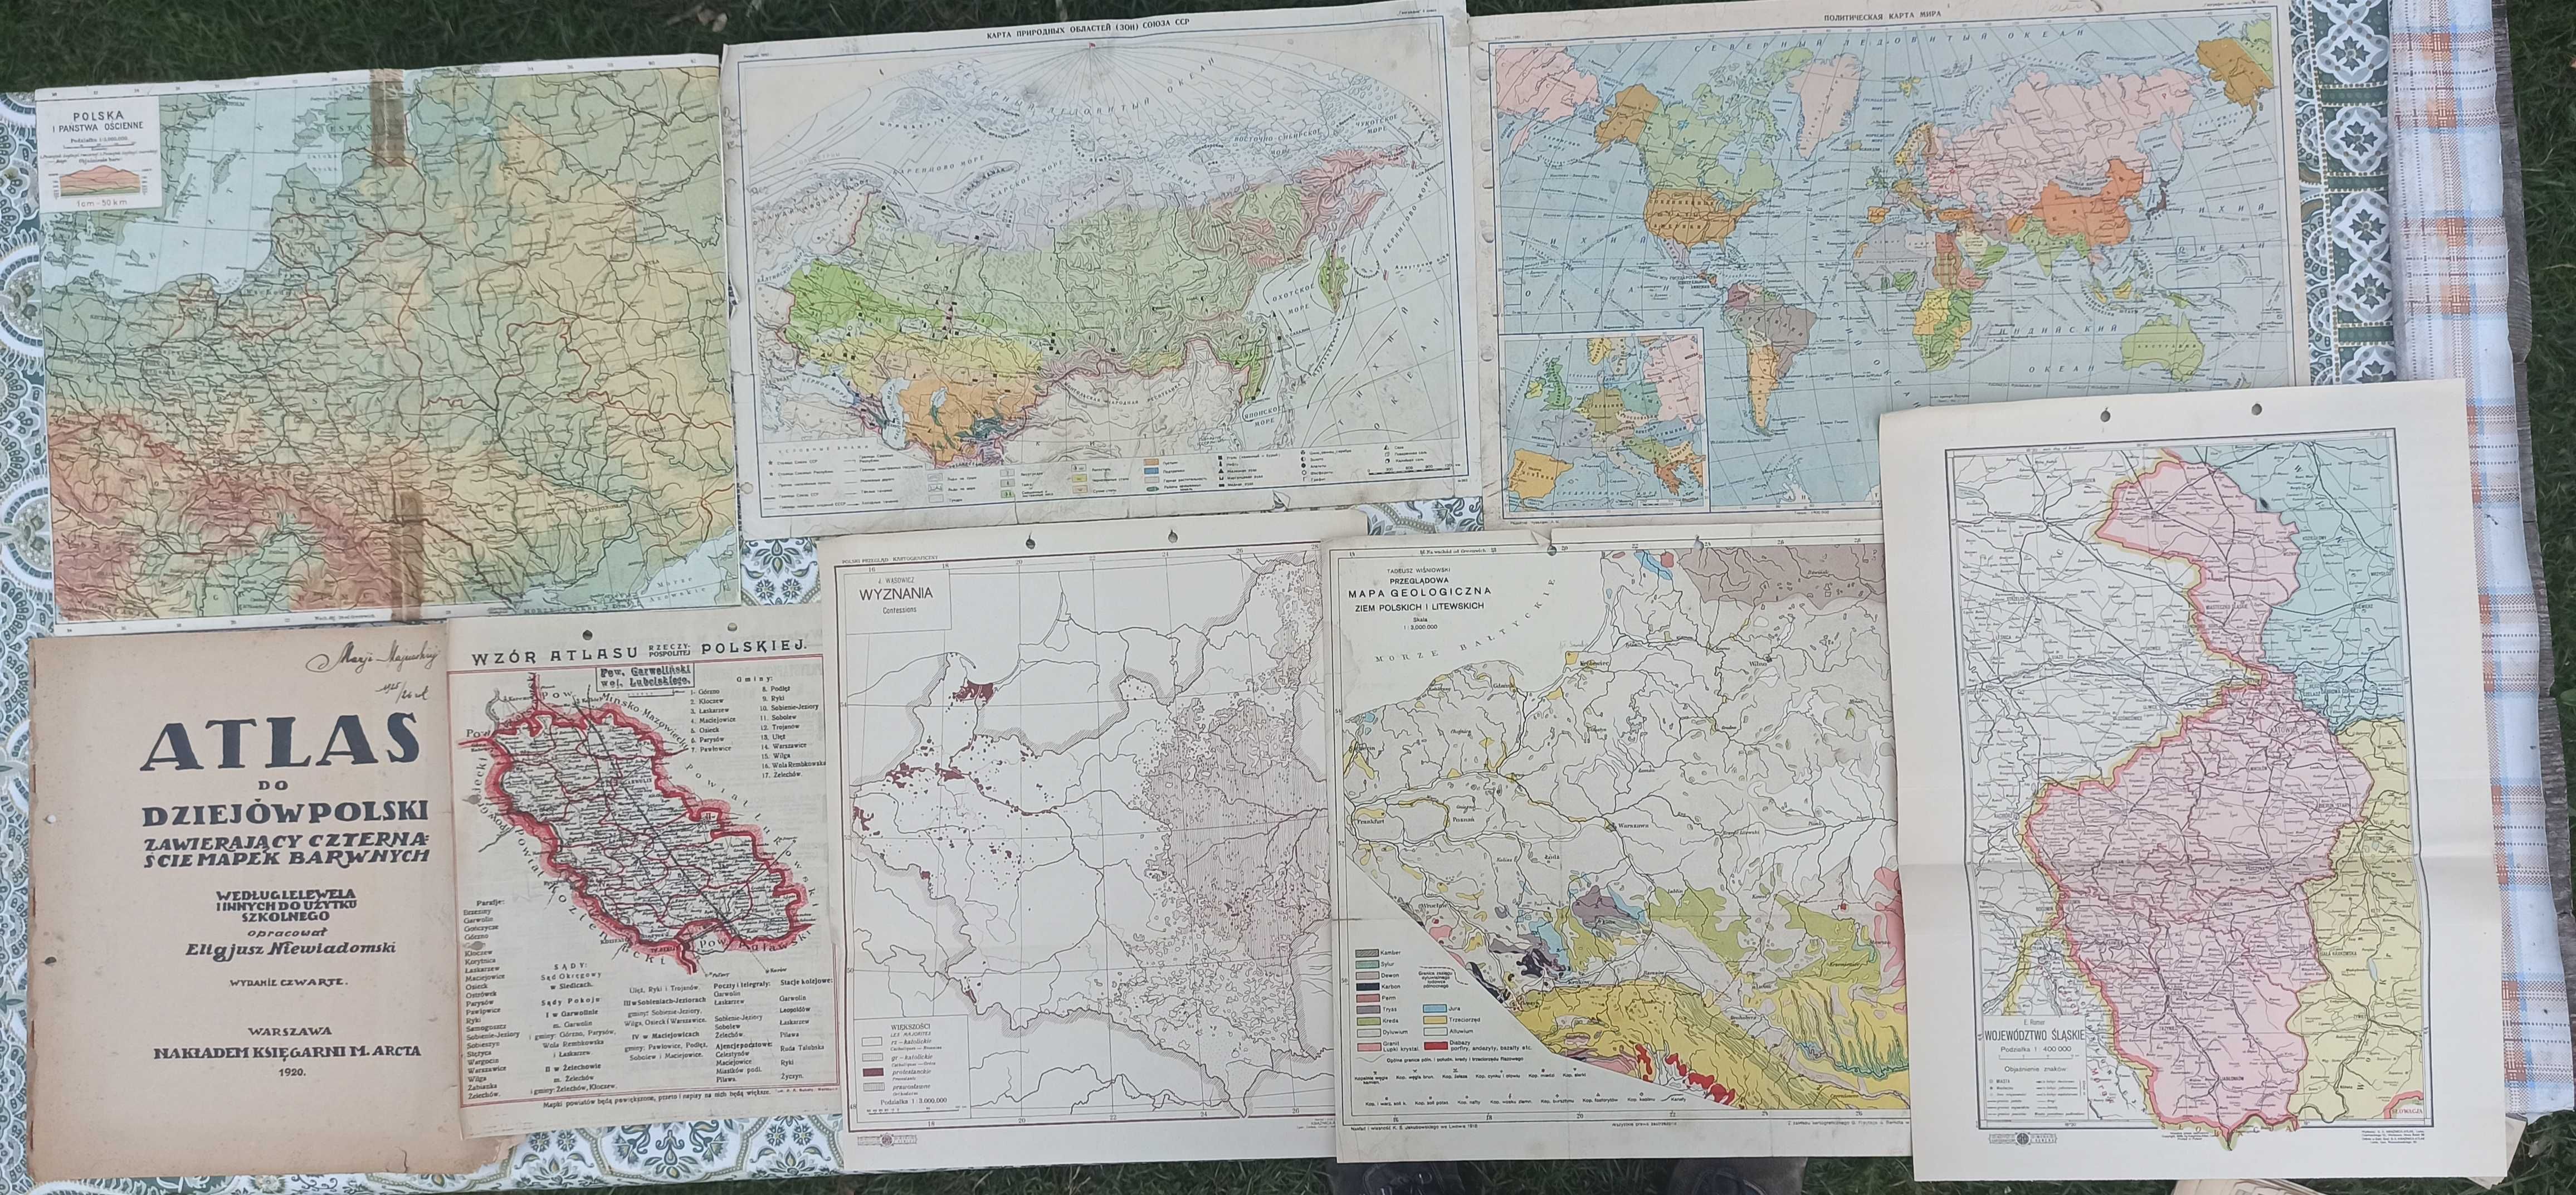 Stare przedwojenne mapy z ksiązek, atlasów, gazet